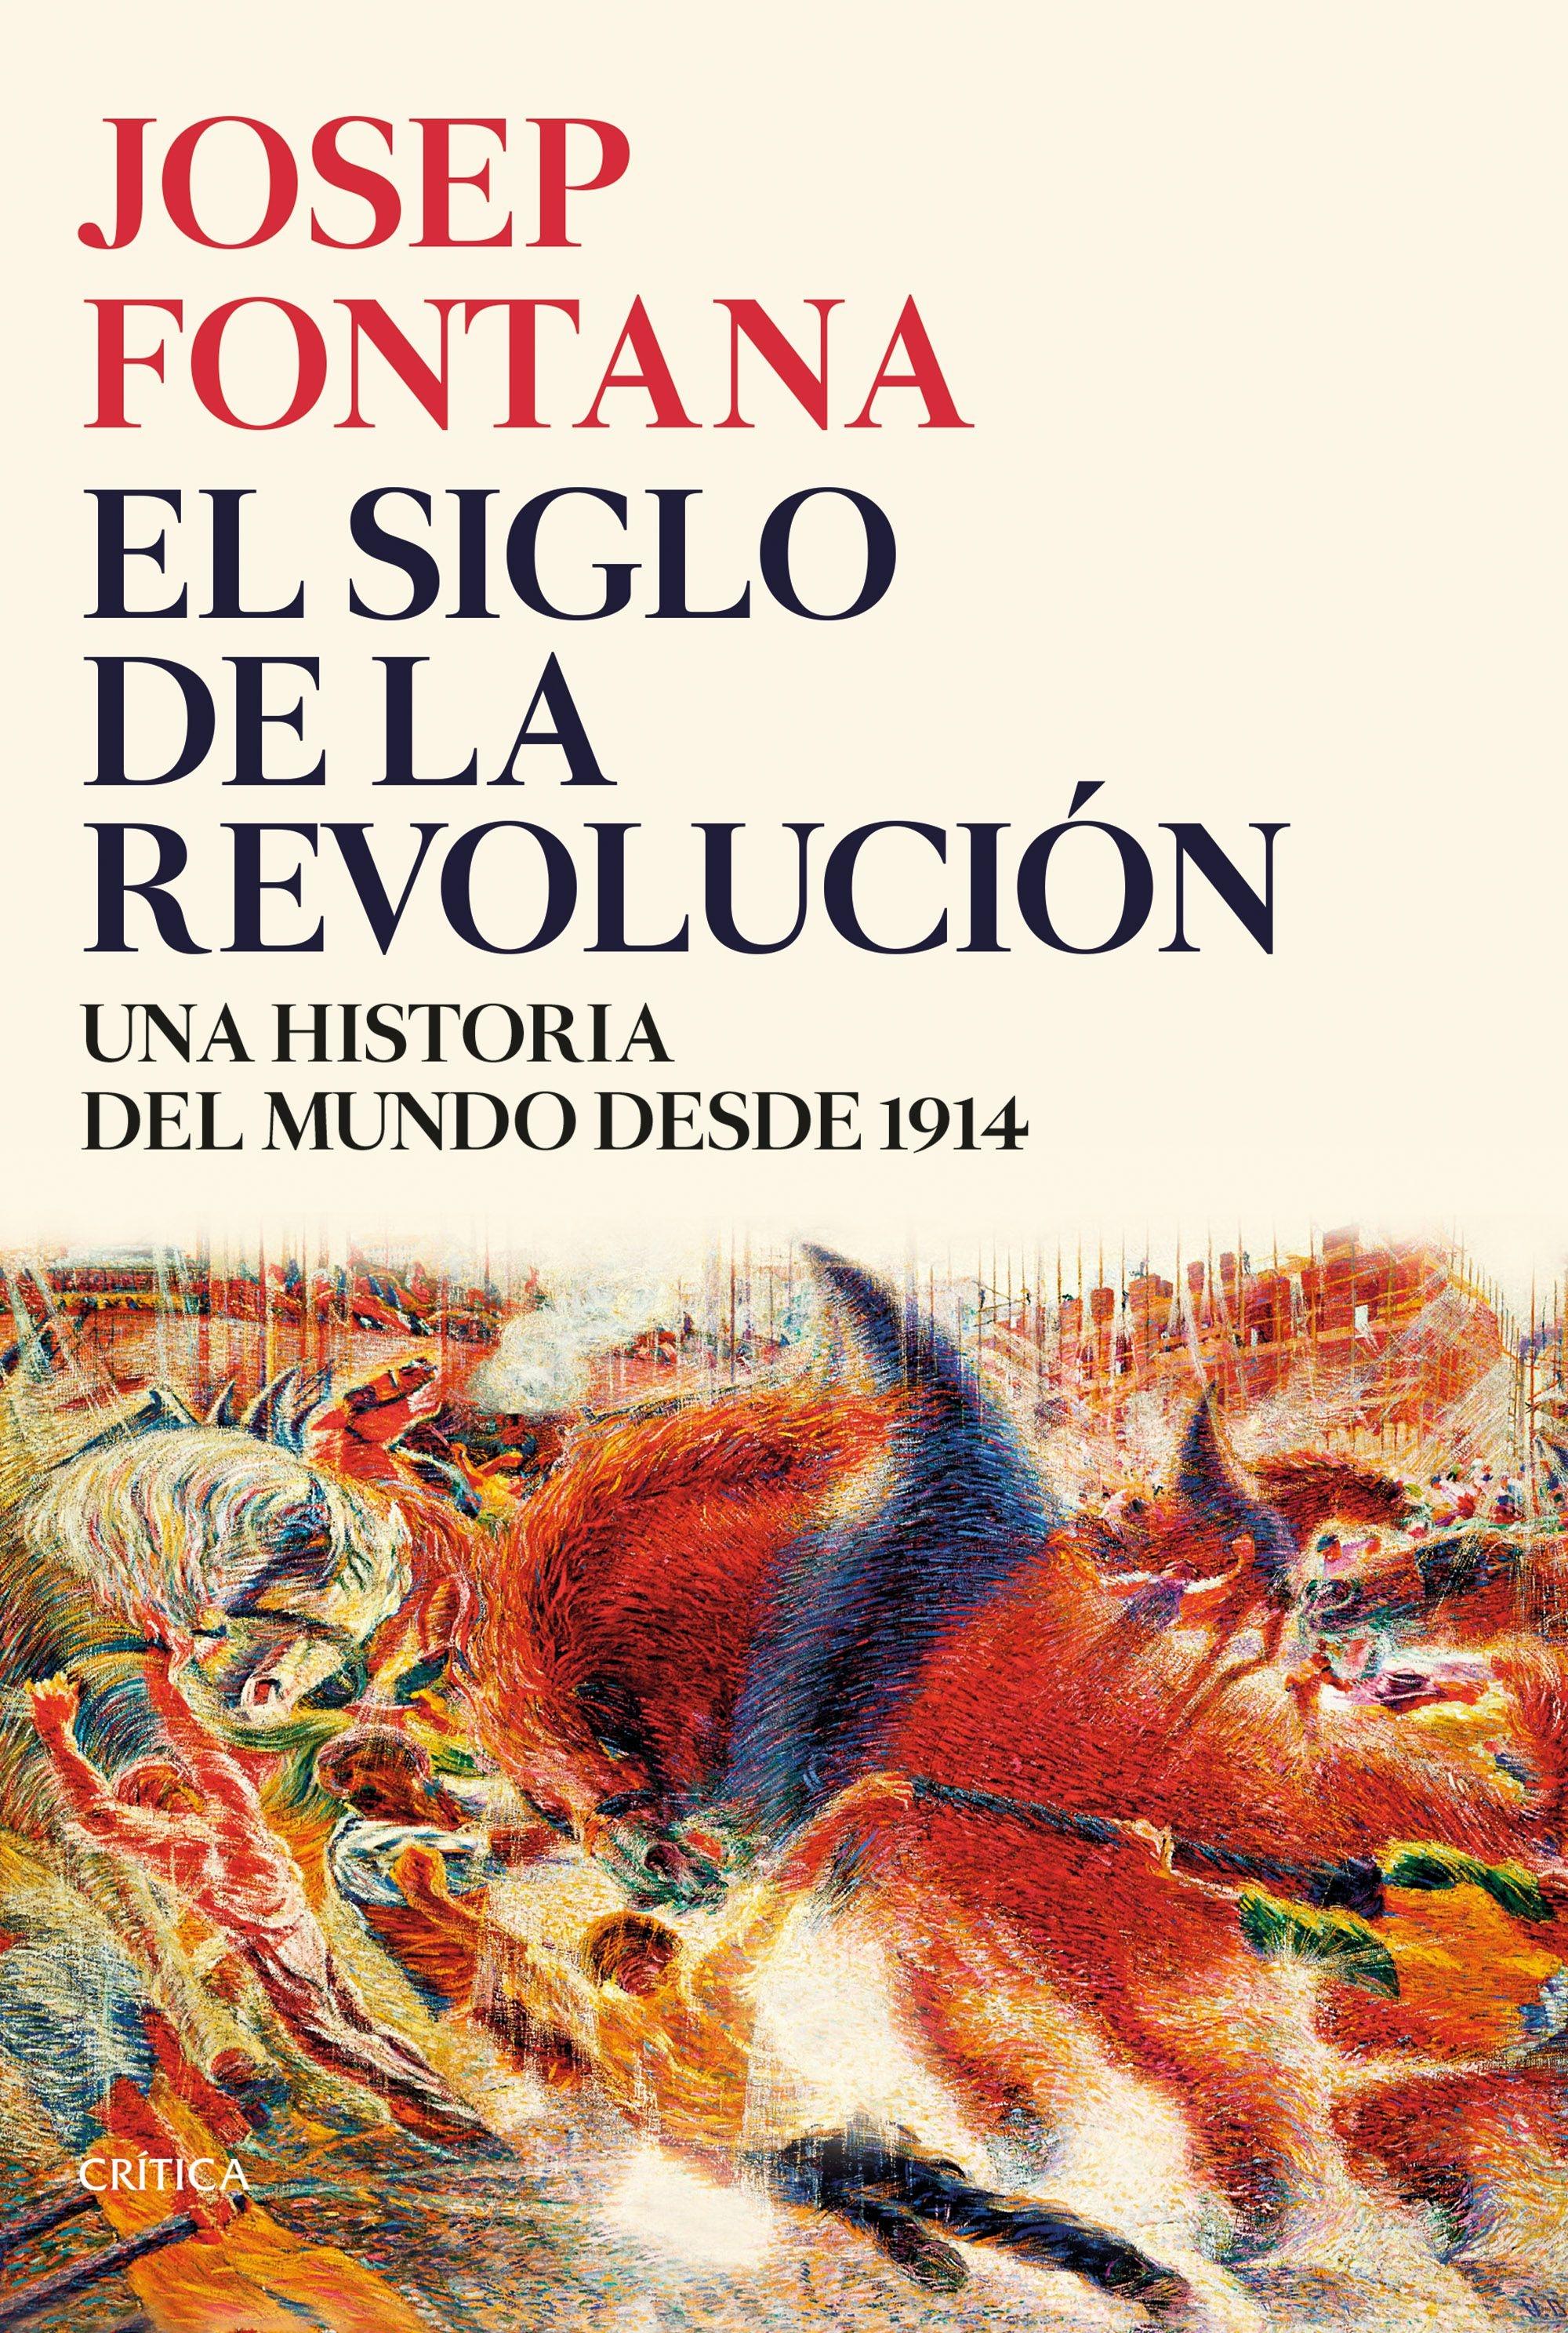 El siglo de la revolución "Una historia del mundo desde 1914"